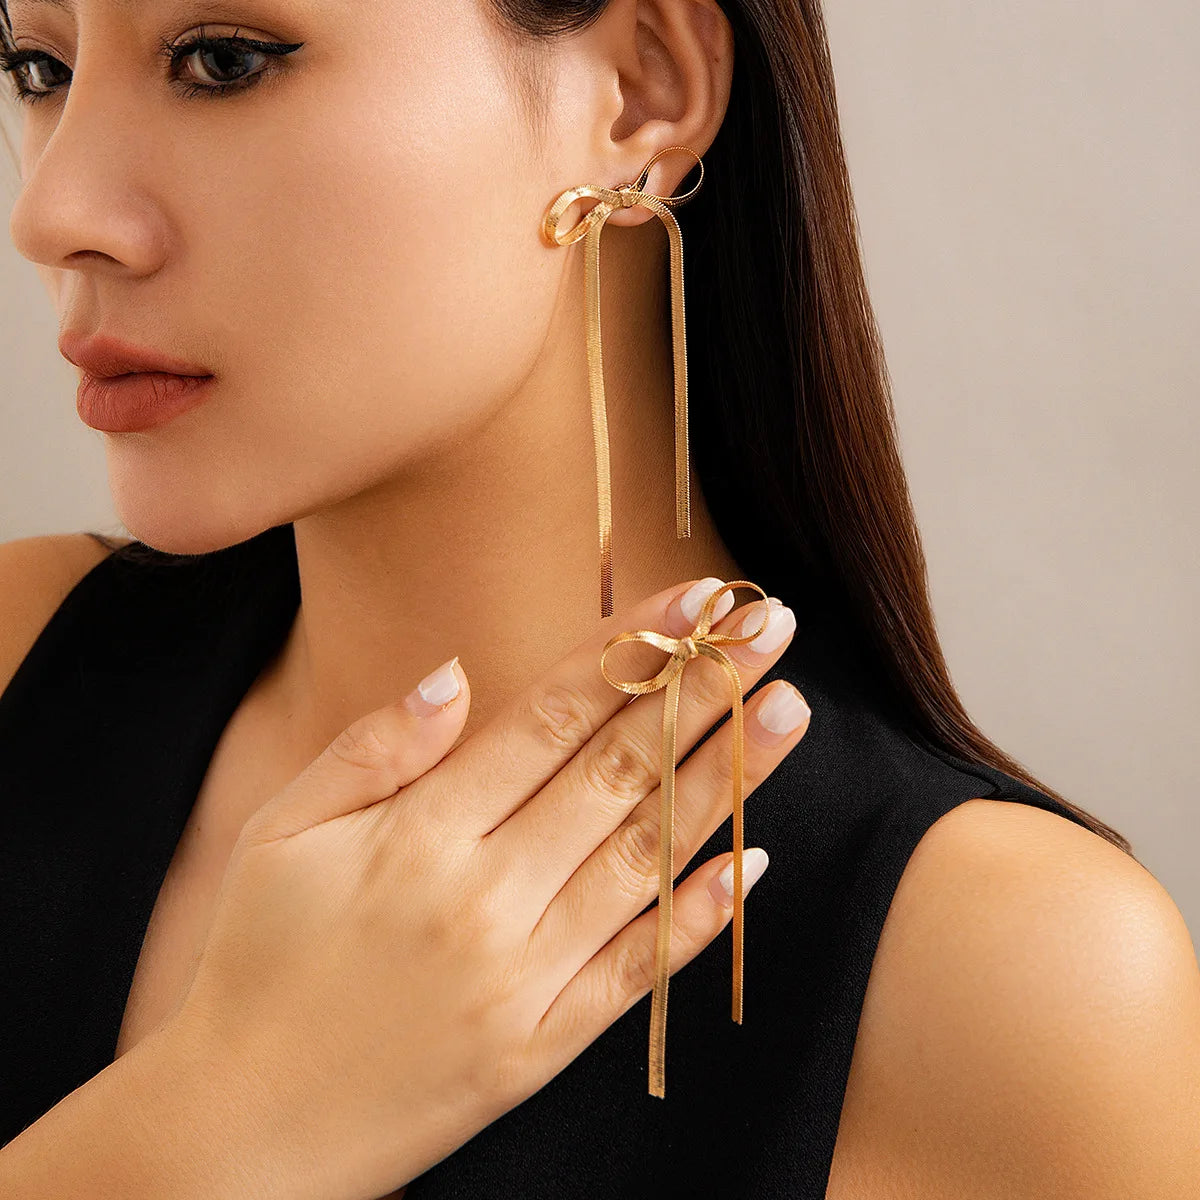 Trendy Long Bowknot Tassels Drop Earrings for Women Girls, Stainless Steel Stud Bow Textured Geometric Ear Jewelry